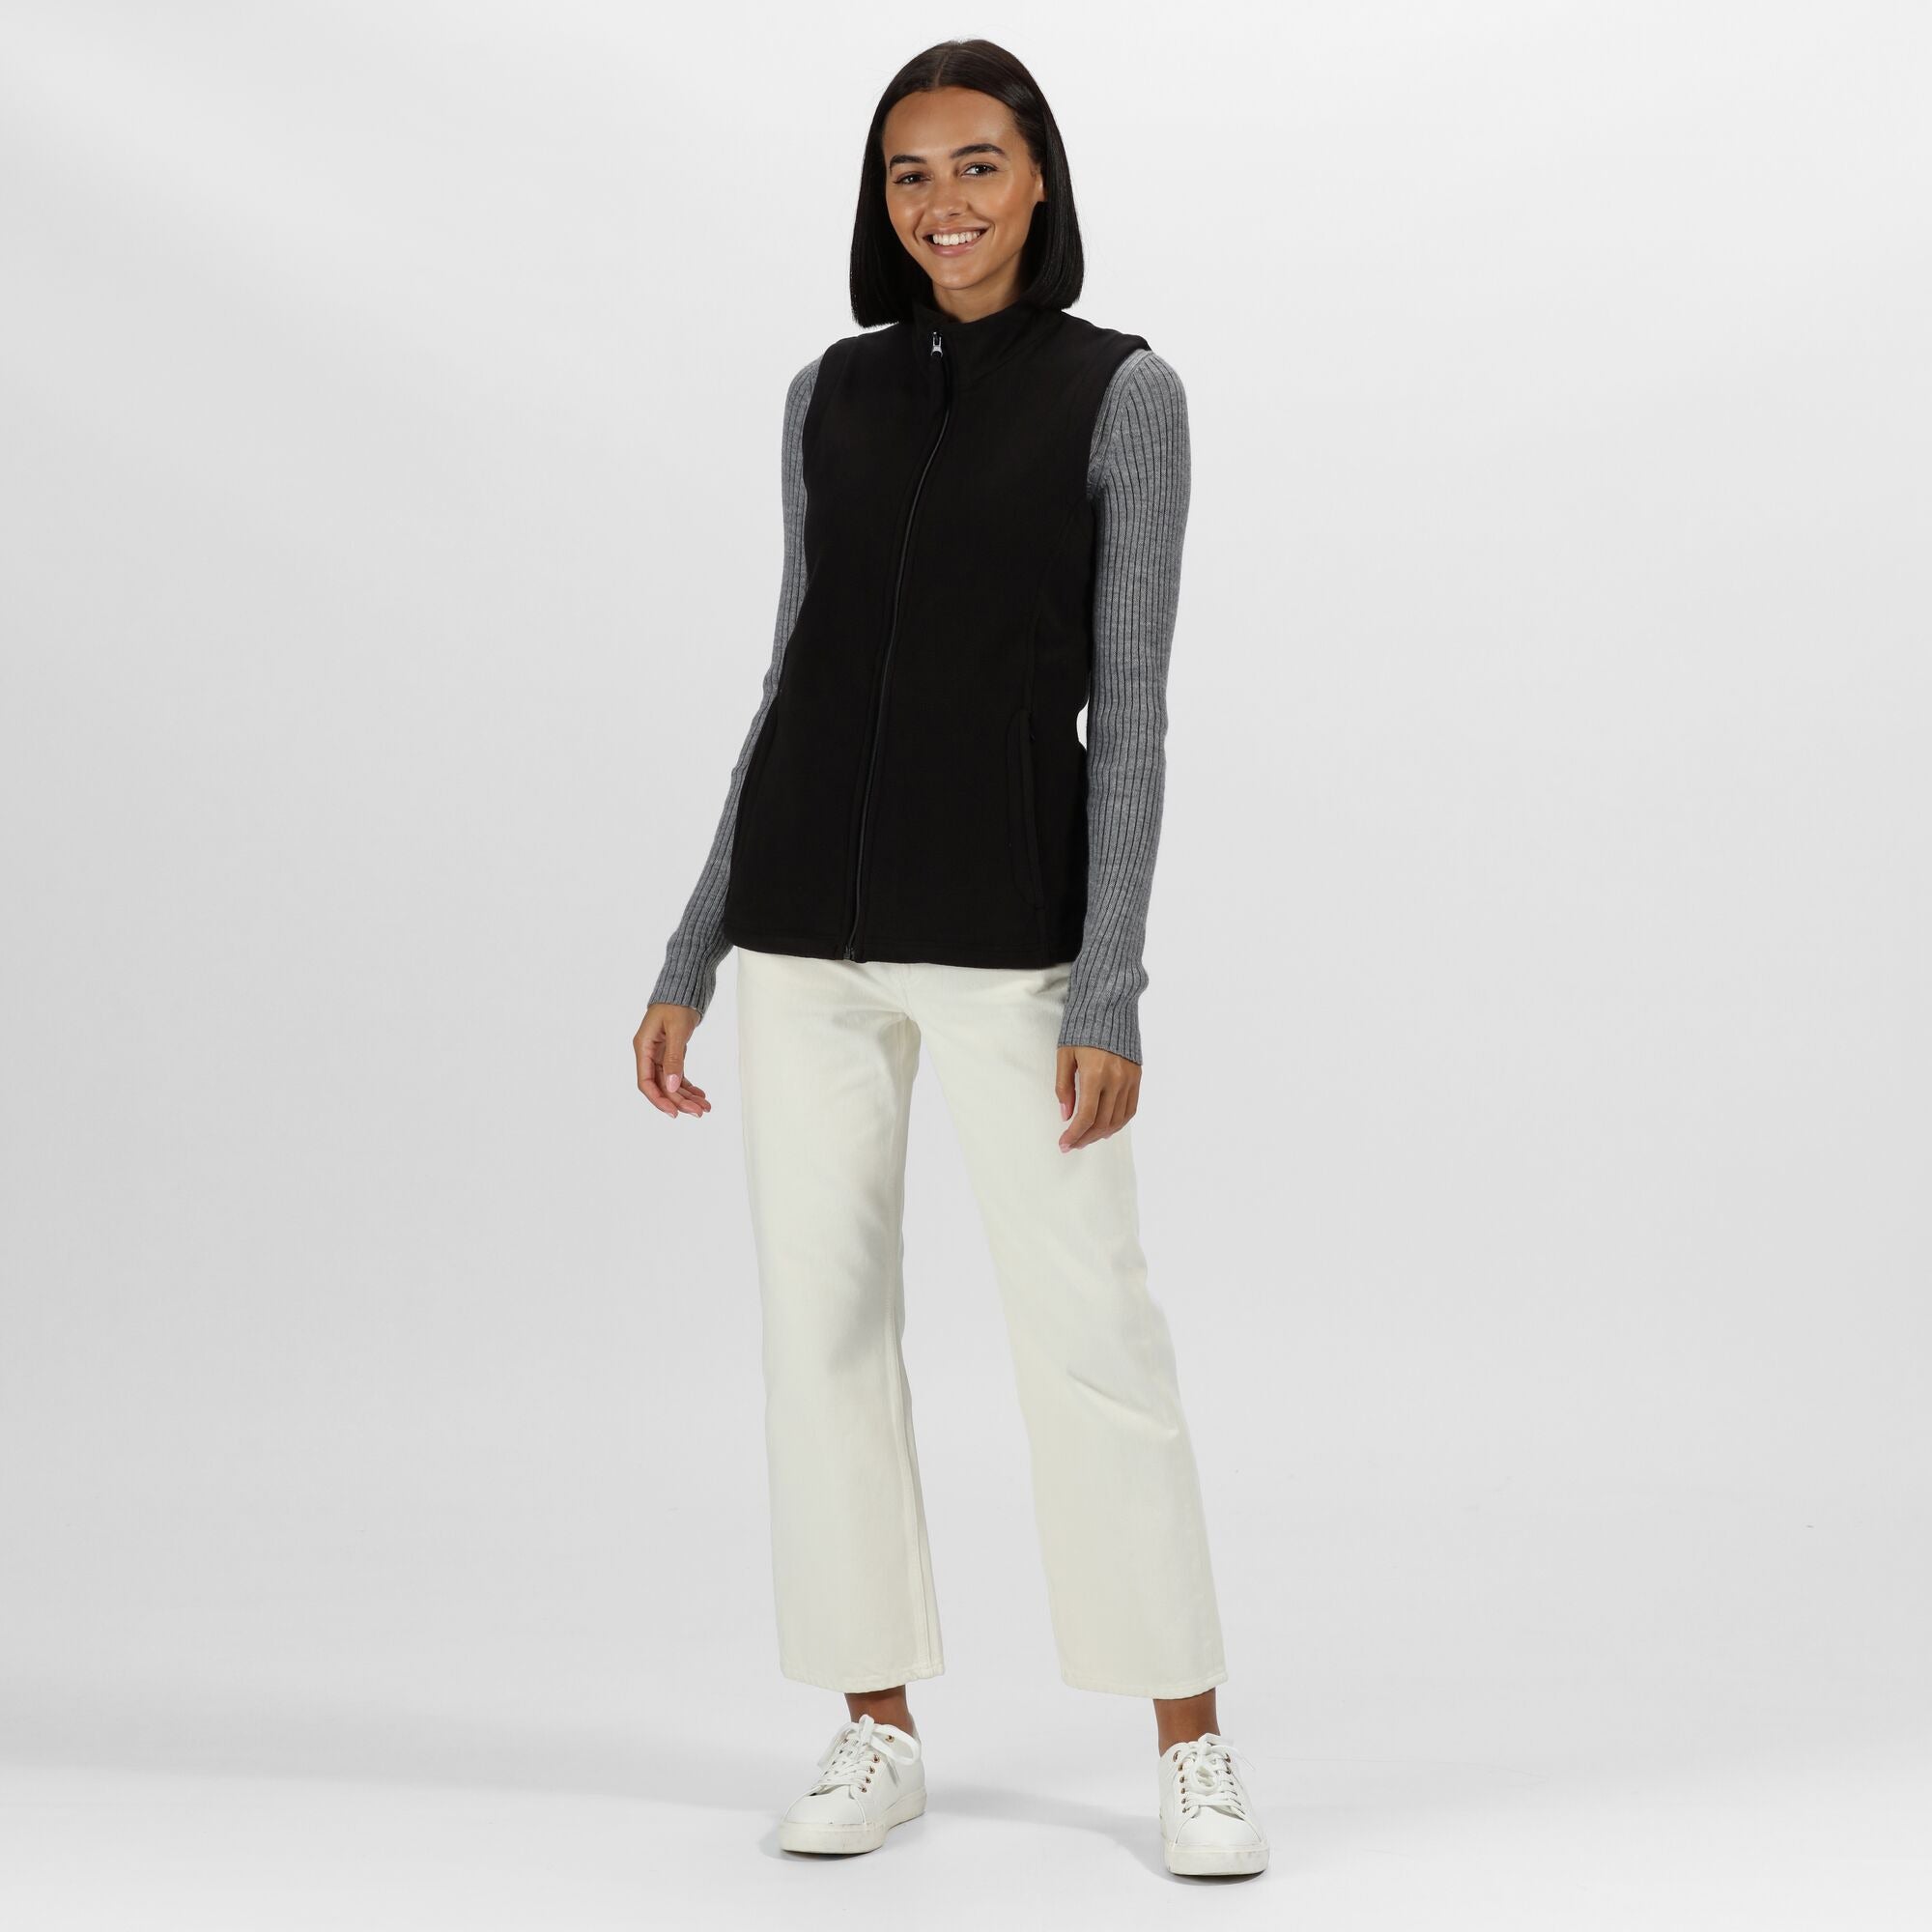 Regatta Women's Black Micro Fleece zipped pockets Shaped fit Body warmer #TRA802